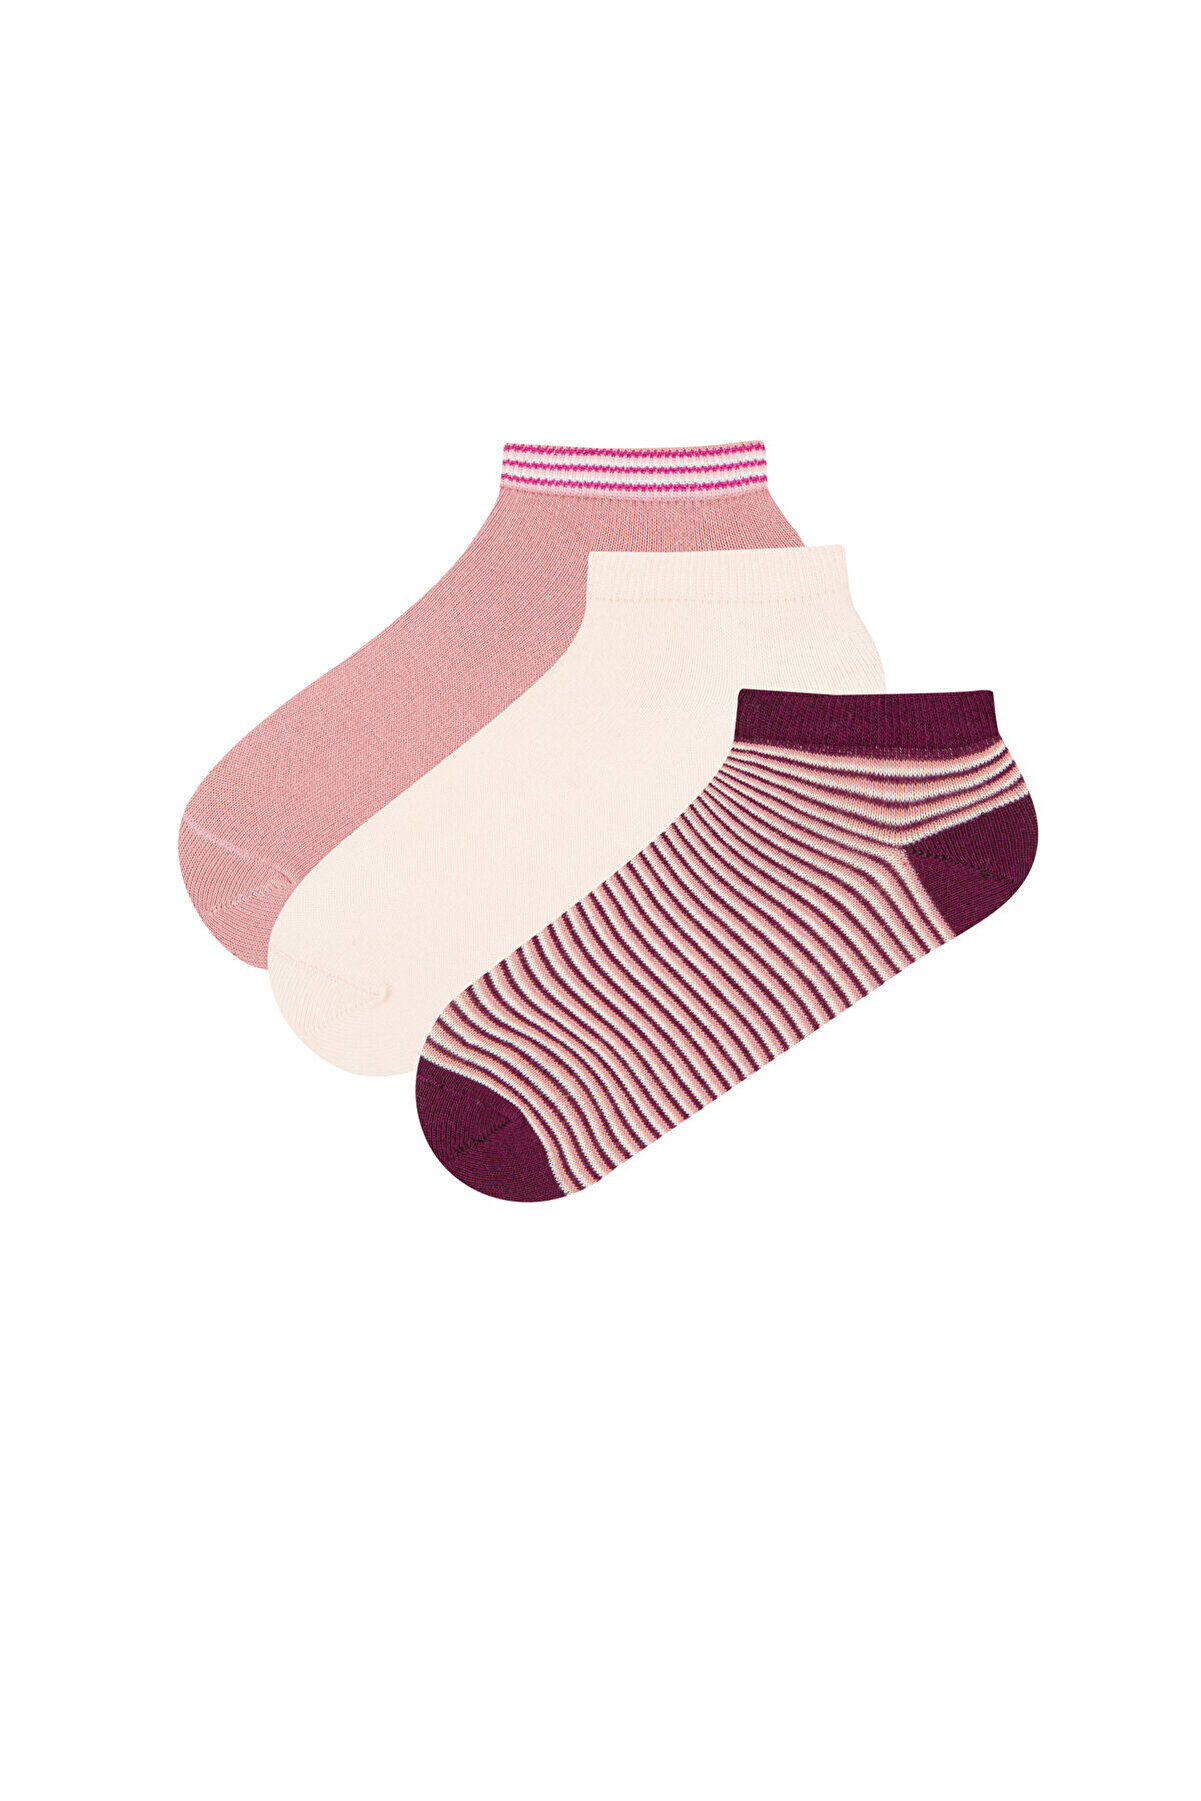 Penti Çember 3lü Patik Çorap